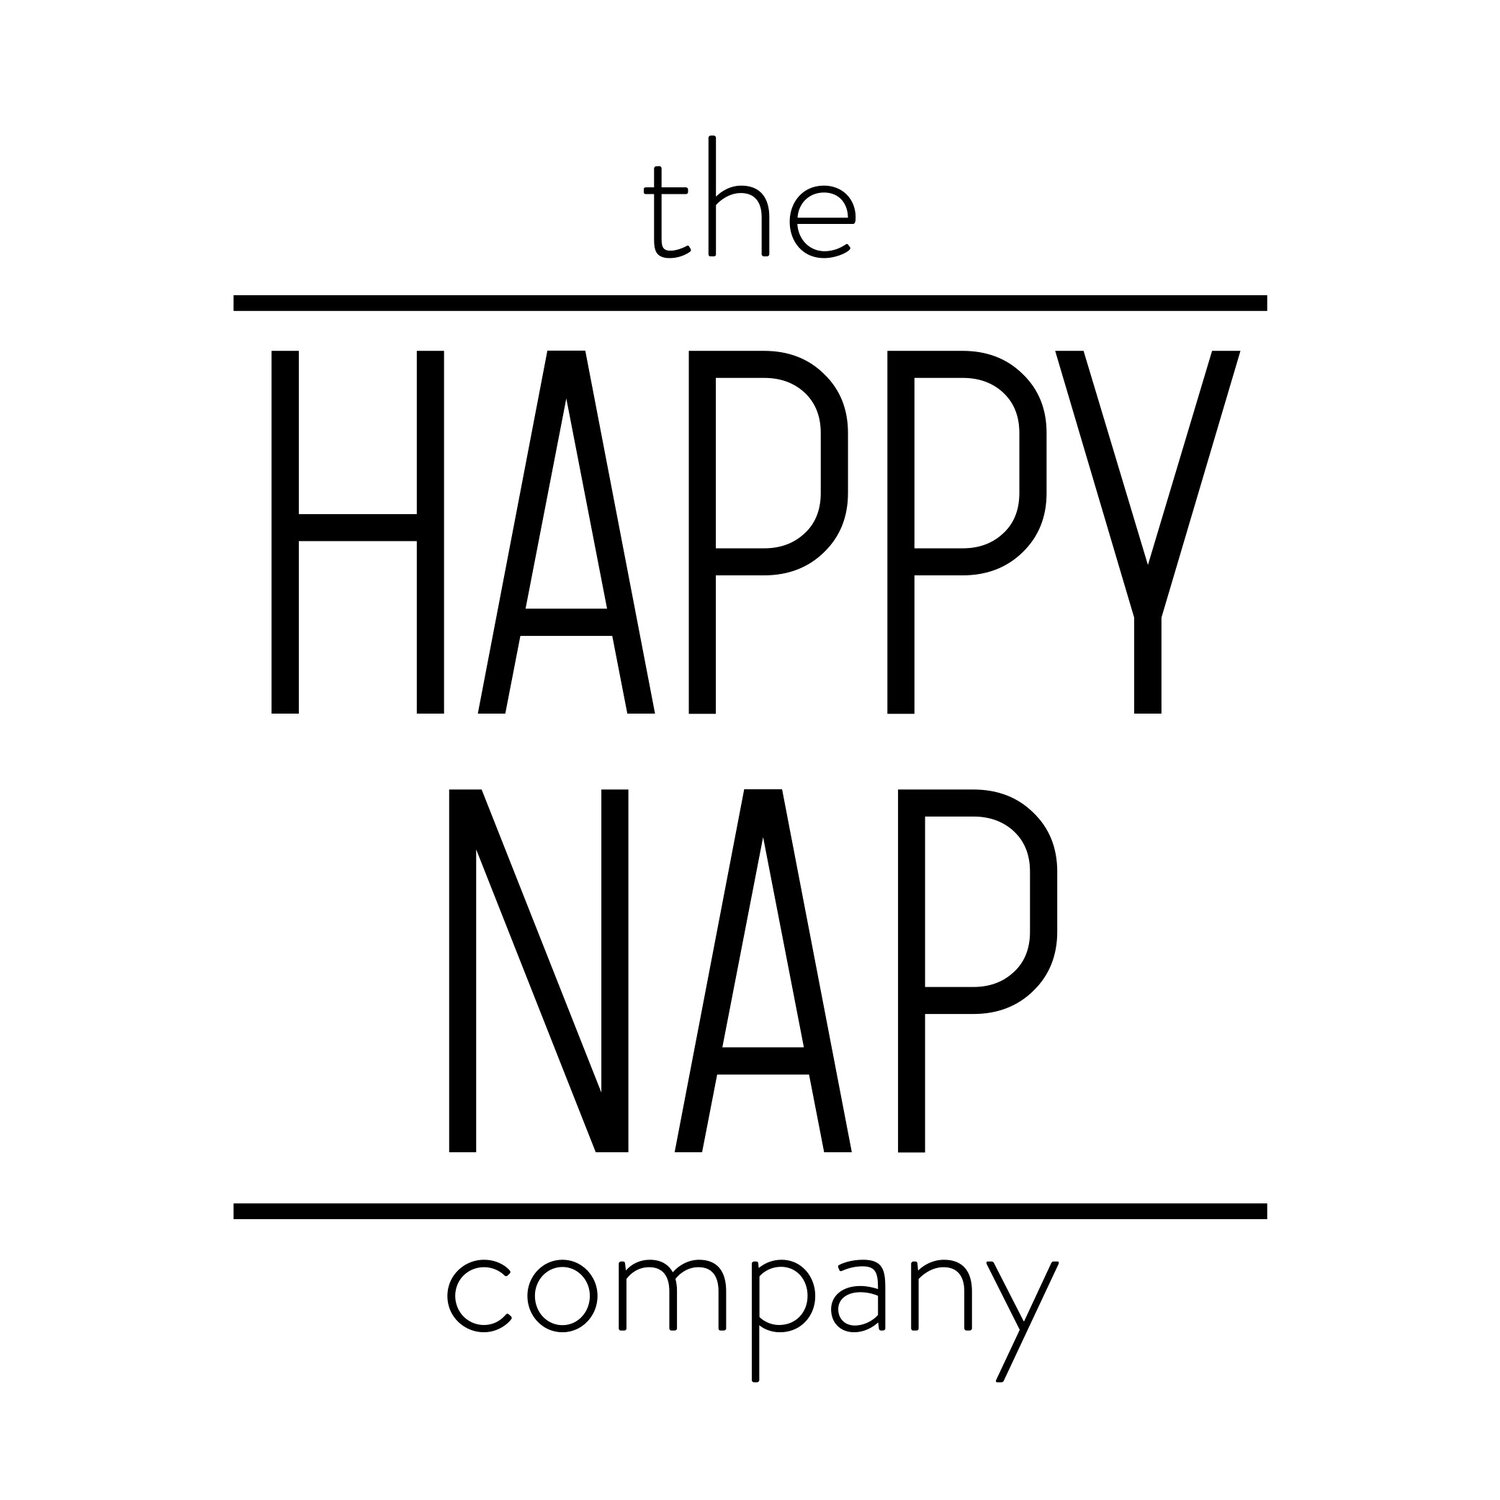 The Happy Nap Company